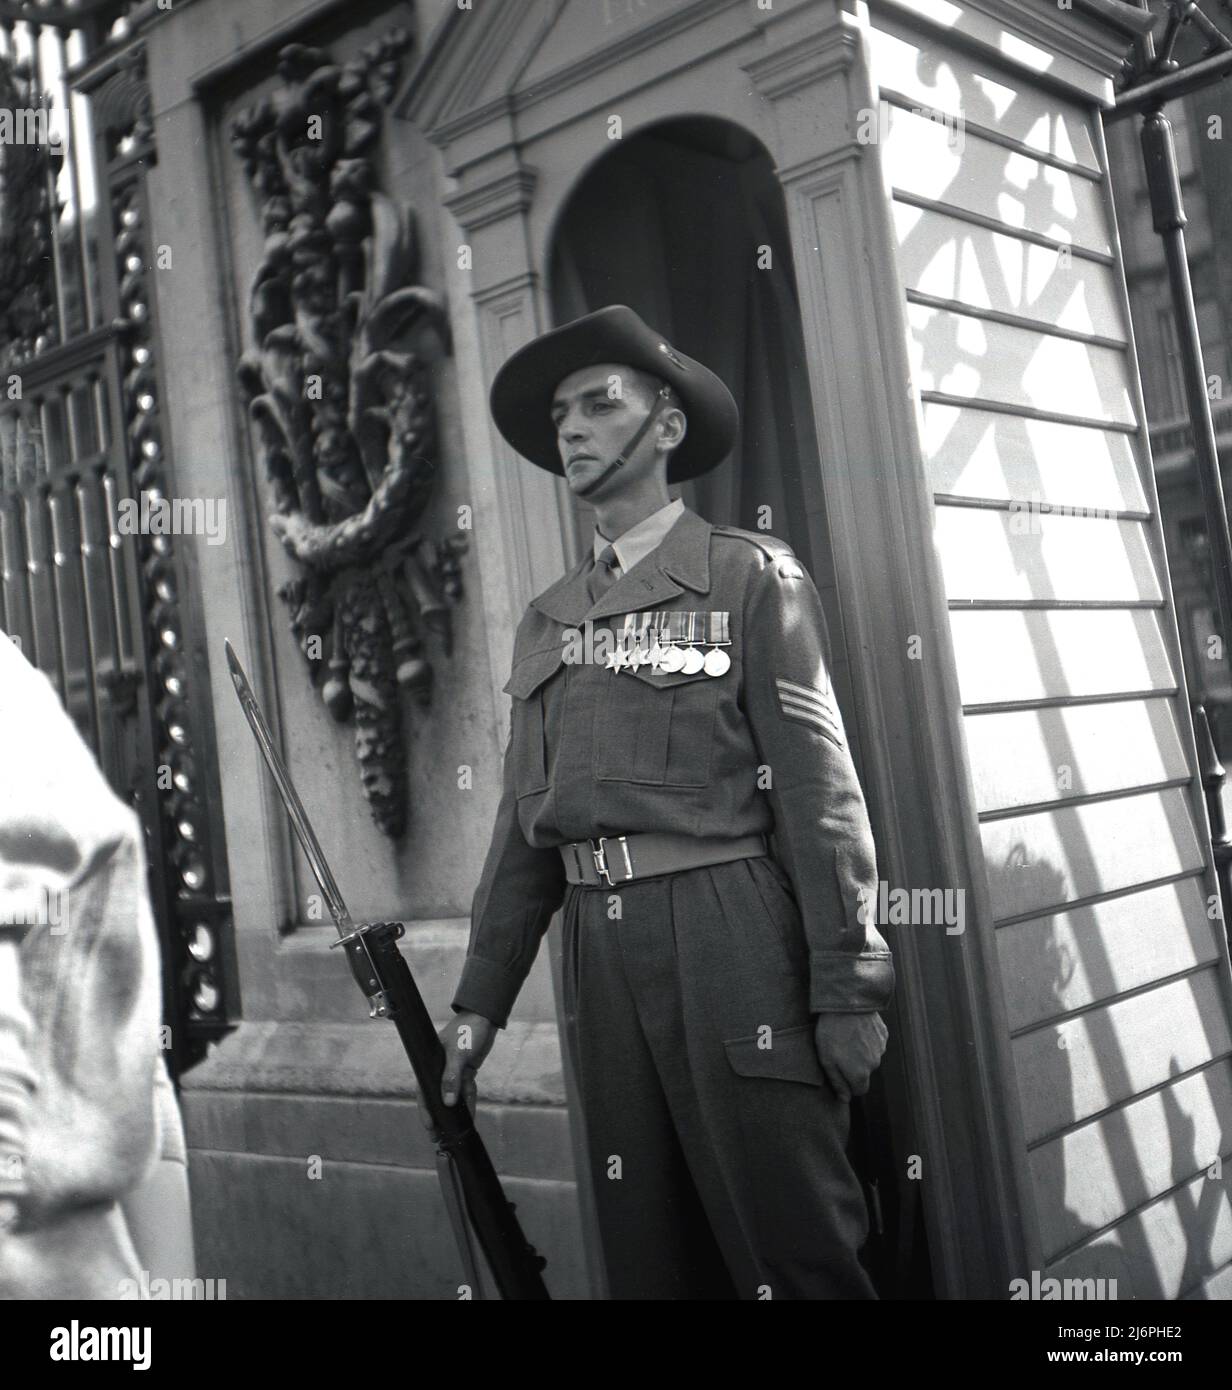 1953, historisch, ein geschmückter Armeefeldwebel in Uniform, mit Gewehr und angeschlossenem Bajonett, möglicherweise Australier, mit dem Hut, der einen Wachposten vor dem Buckingham Palace im Zentrum Londons während der Krönung von Königin Elizabeth II. Anstellte Stockfoto